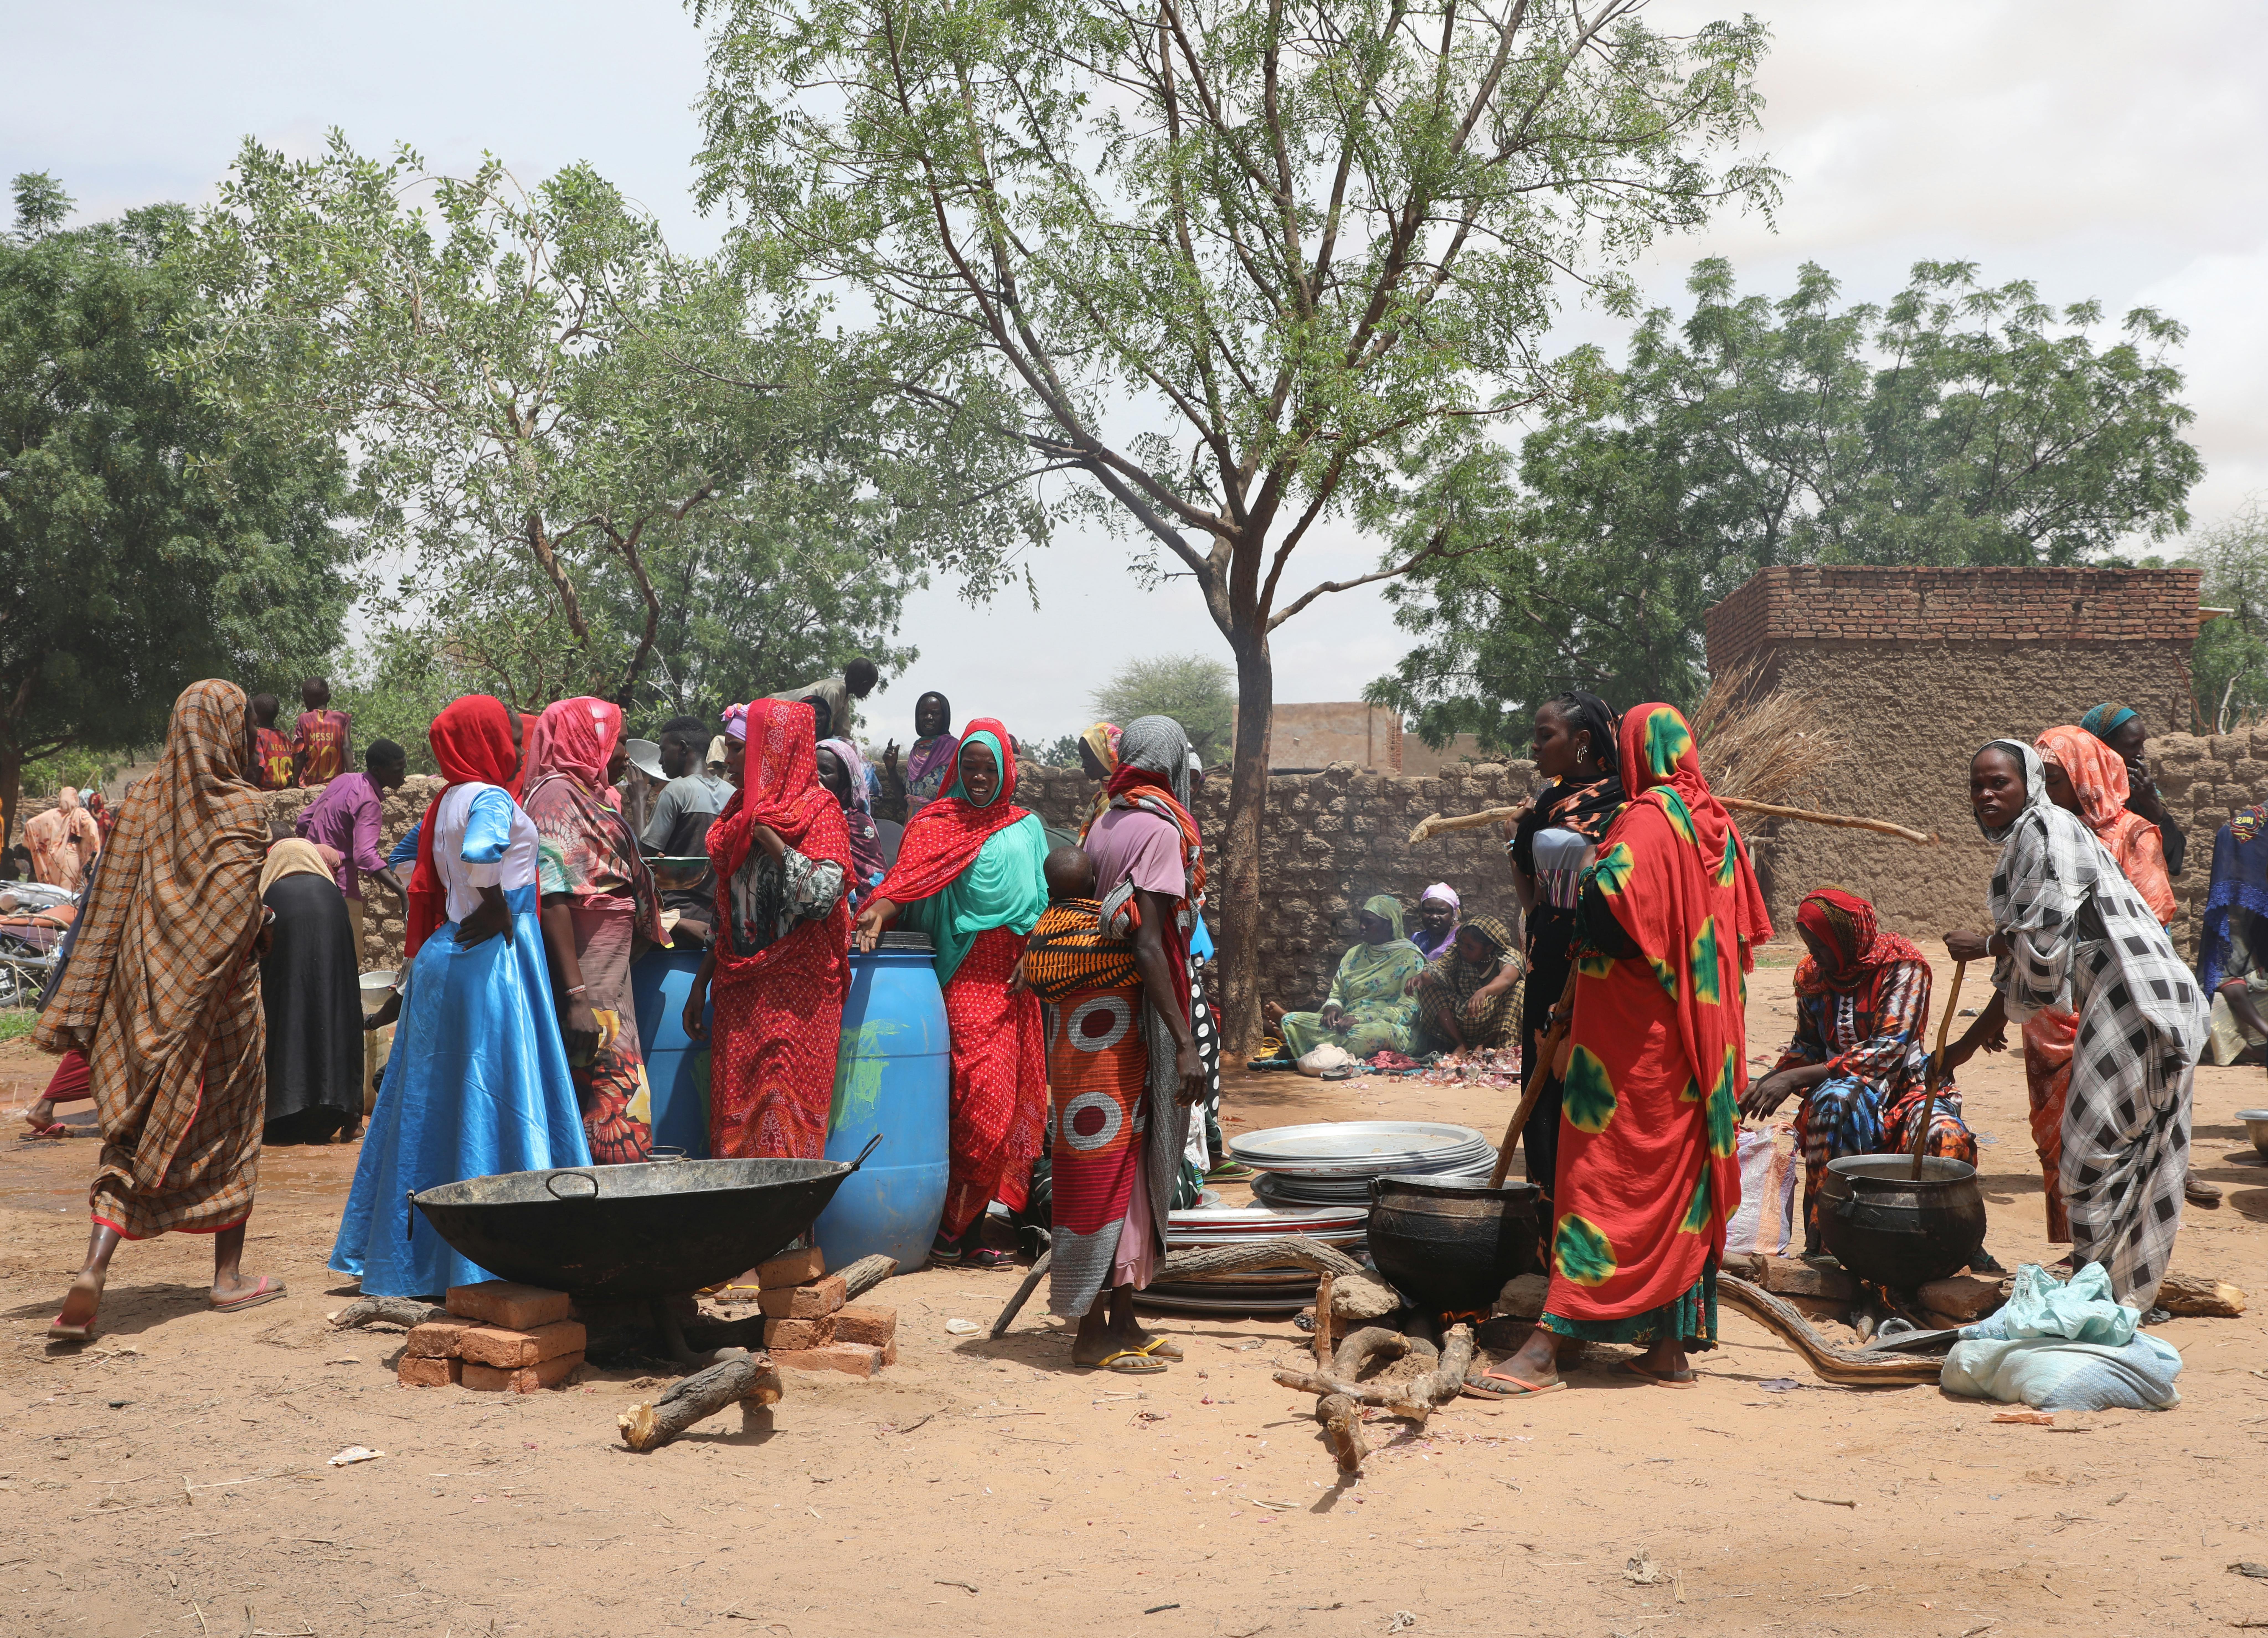 Fuori dalla scuola di Adre, dove migliaia di persone si sono rifugiate dalle violenze del Sudan, le donne del posto cucinano per tutti.